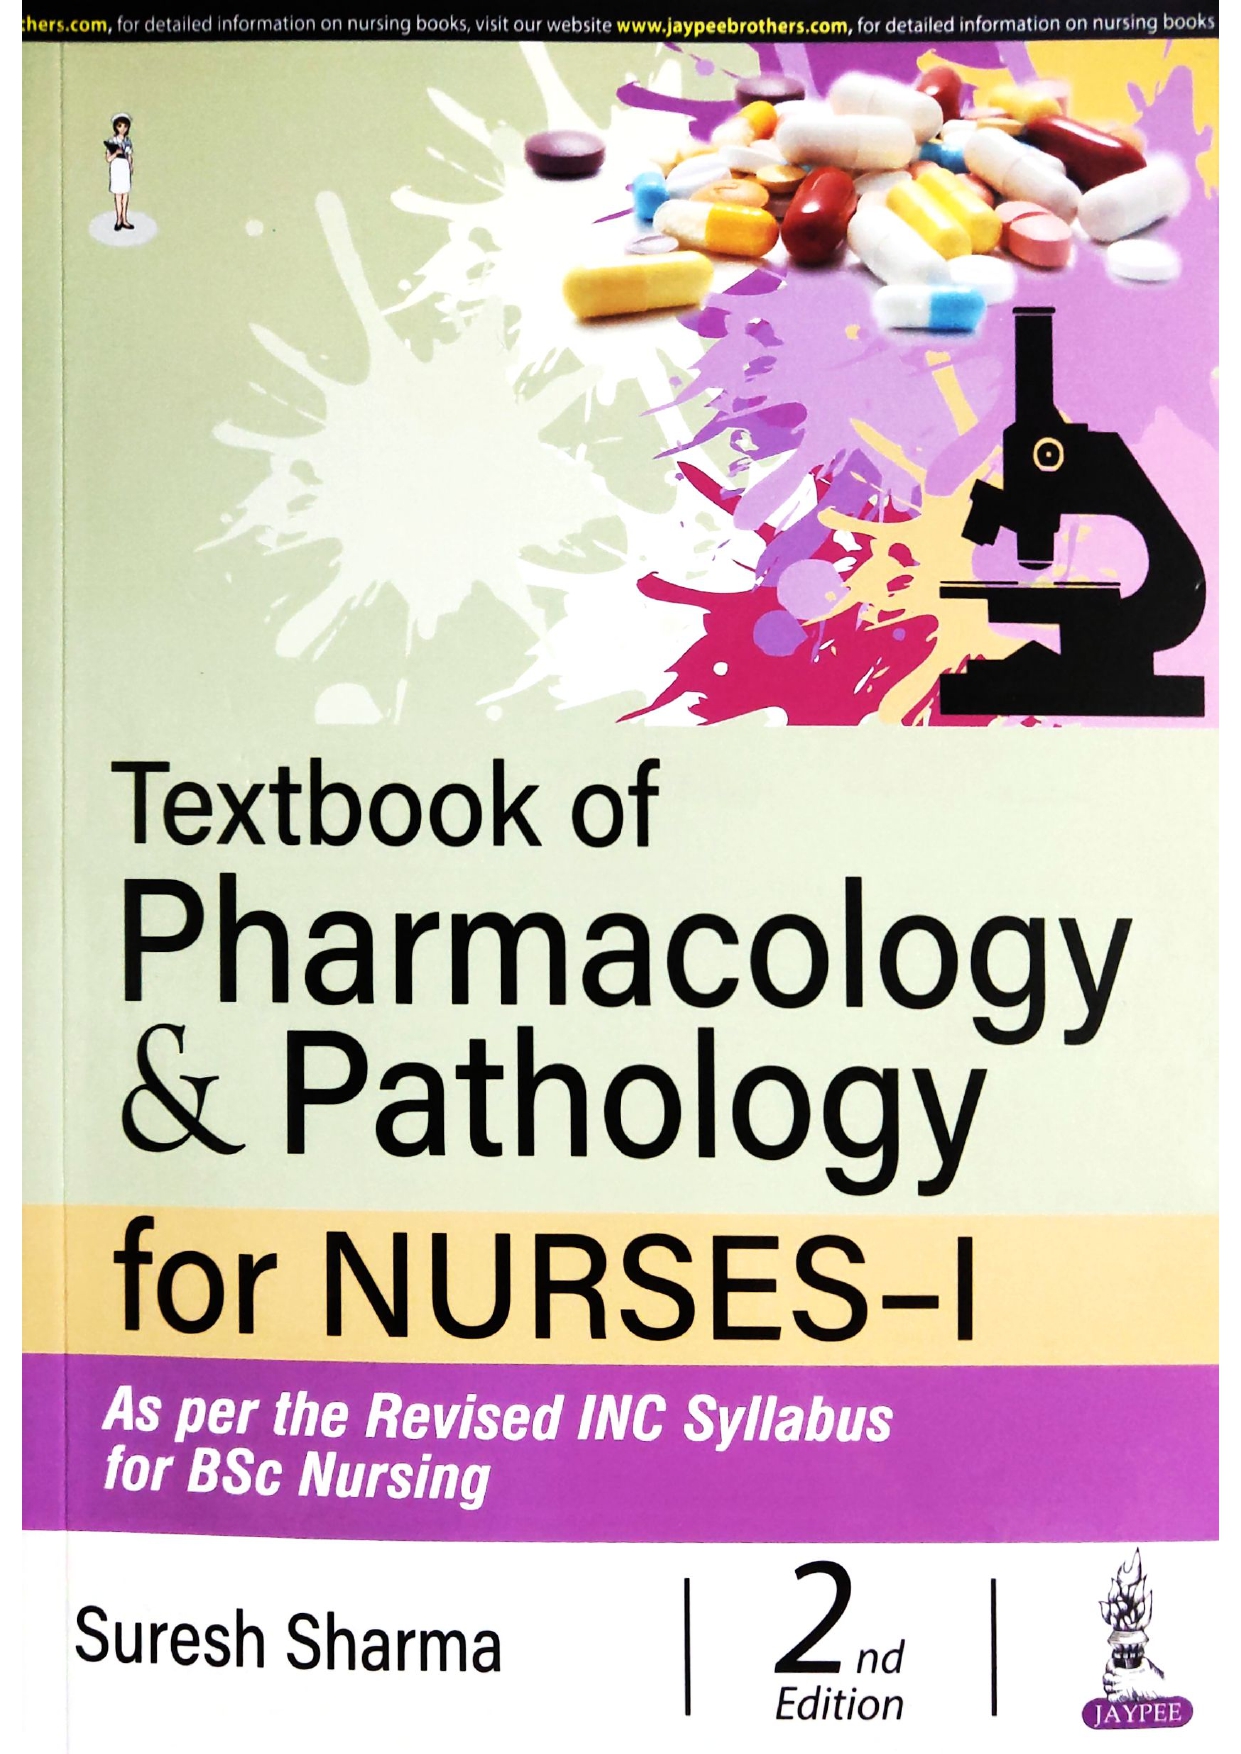 TEXTBOOK OF PHARMACOLOGY & PATHOLOGY FOR NURSES-I